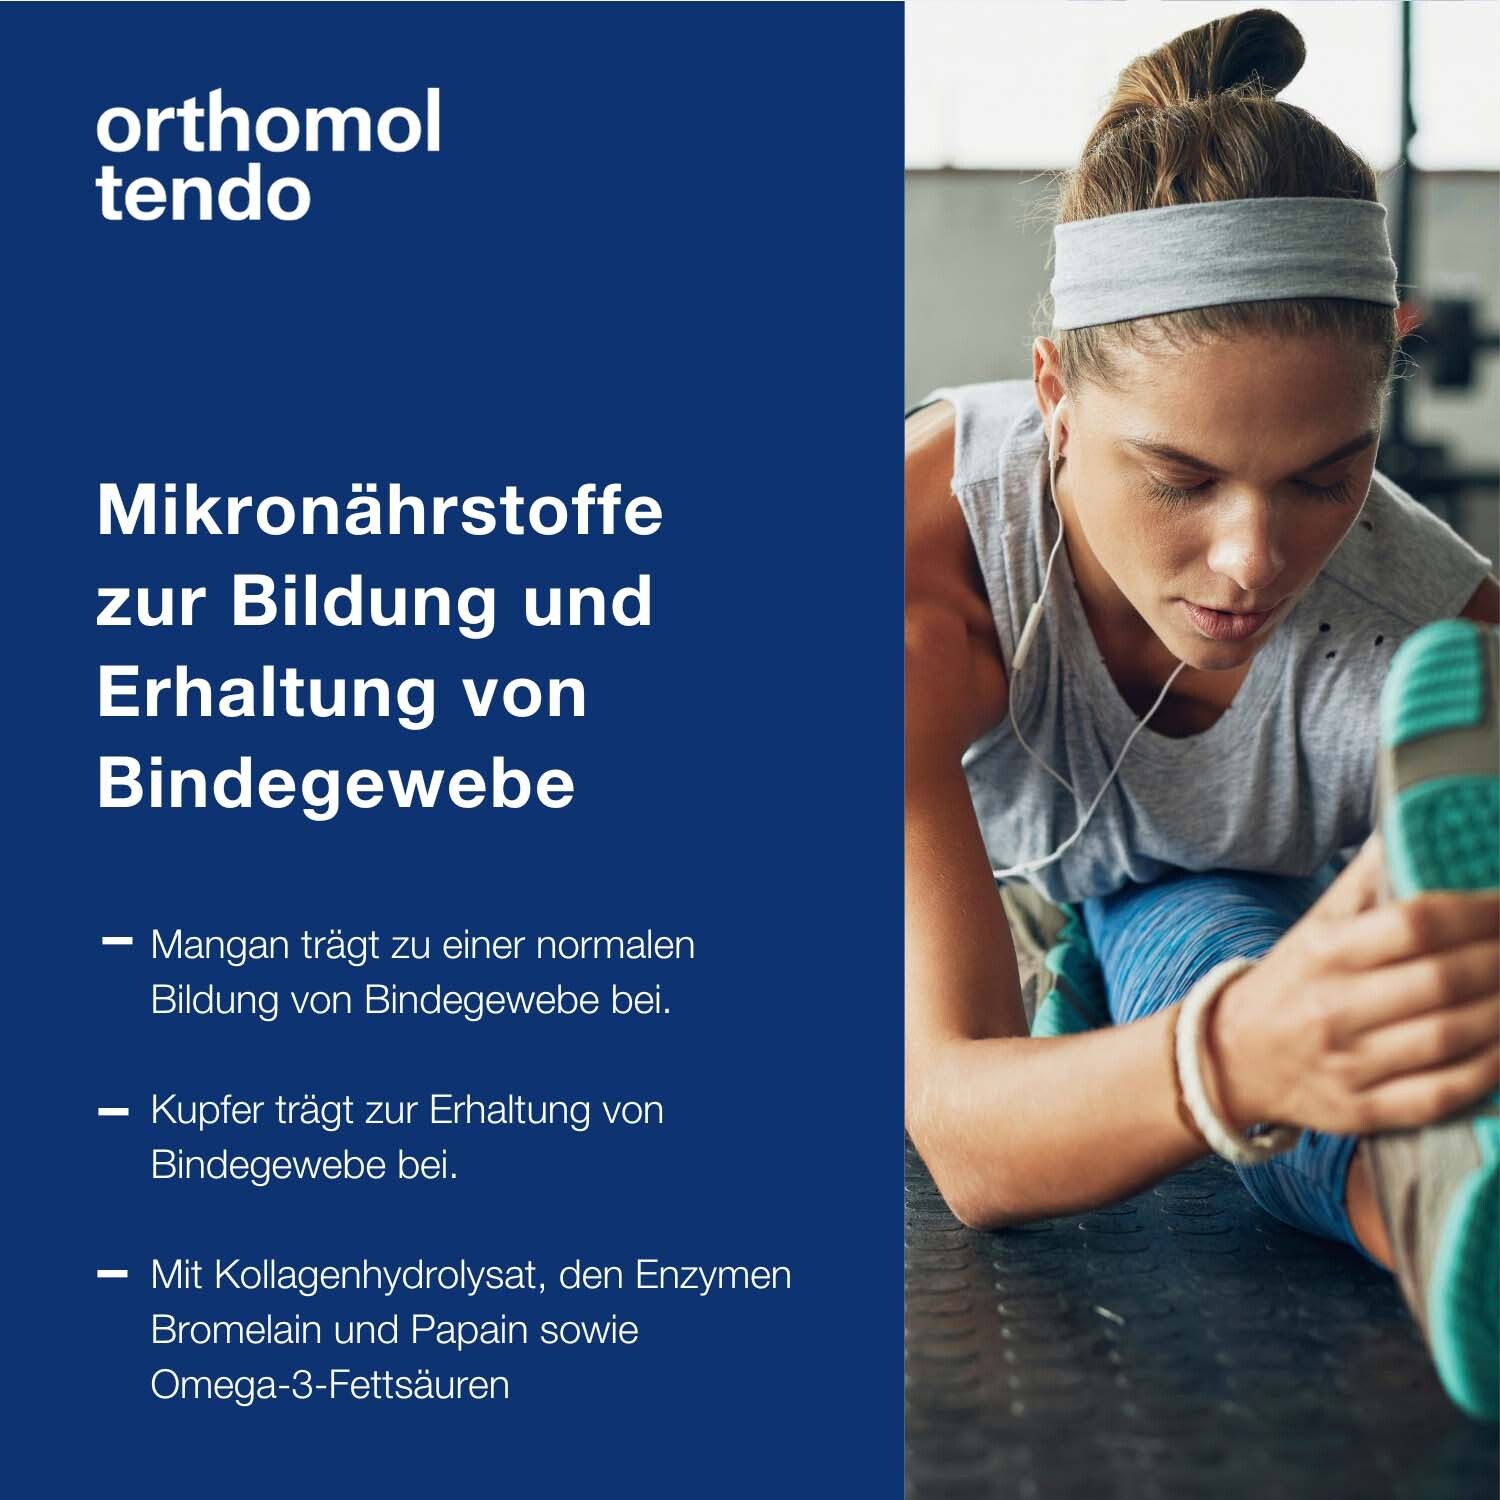 Orthomol Tendo - für normale Bildung und Erhalt von Bindegewebe - Mikronährstoffe, Mangan und Kupfer - Granulat/Tablette/Kapseln